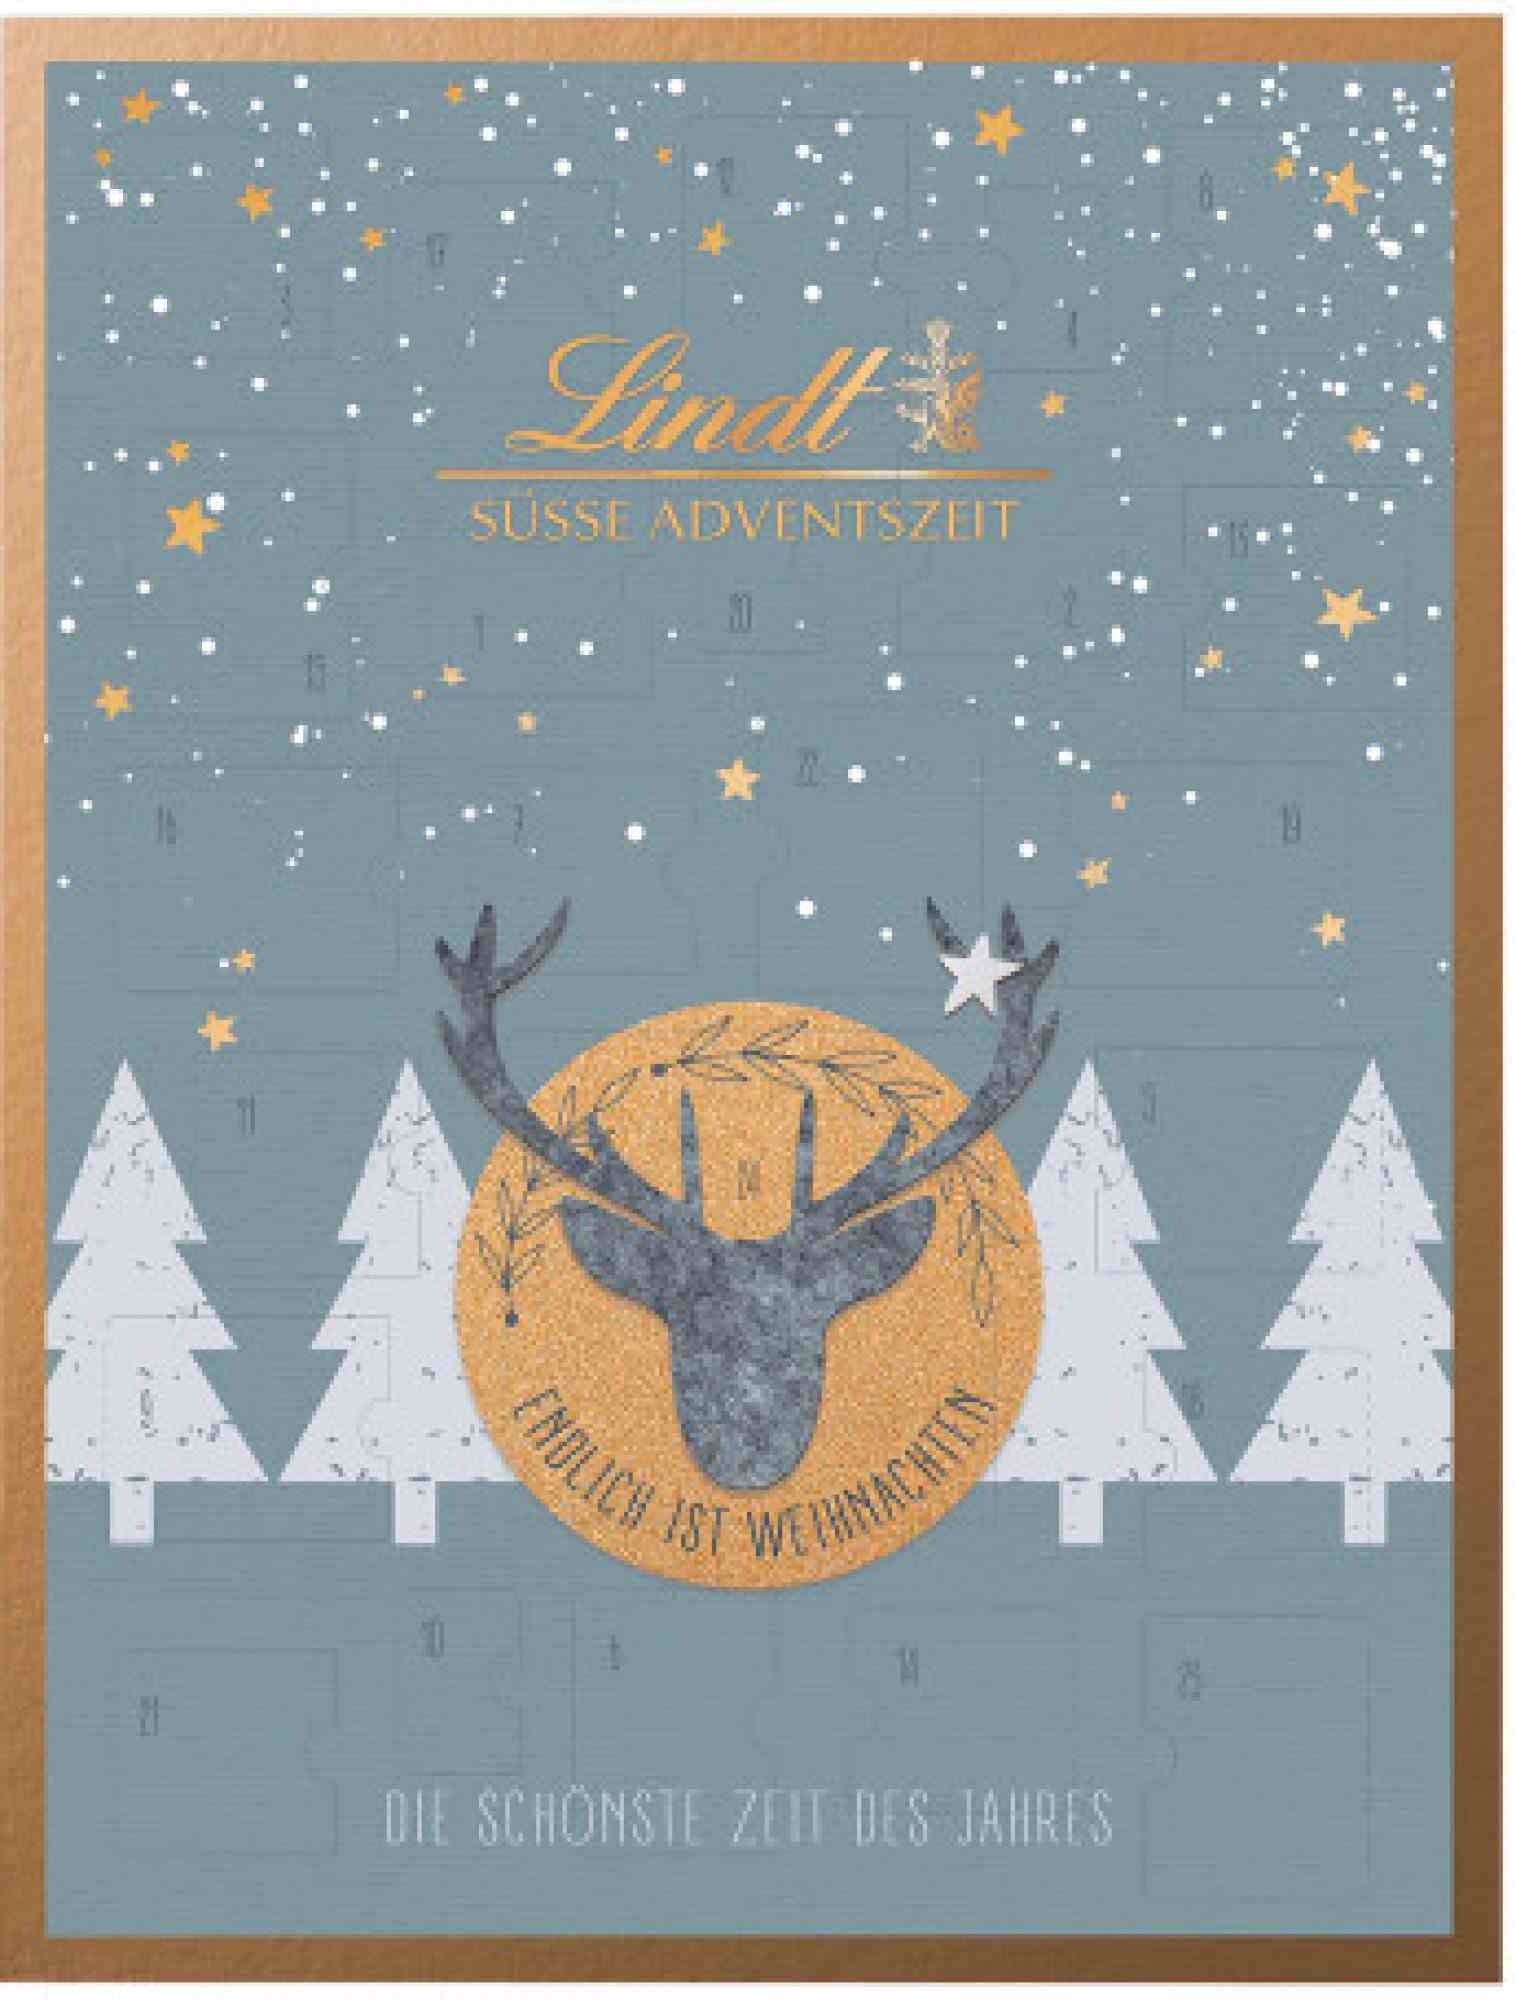 Modrý Lindt kalendář s obrázkem siluety hlavy jelena.